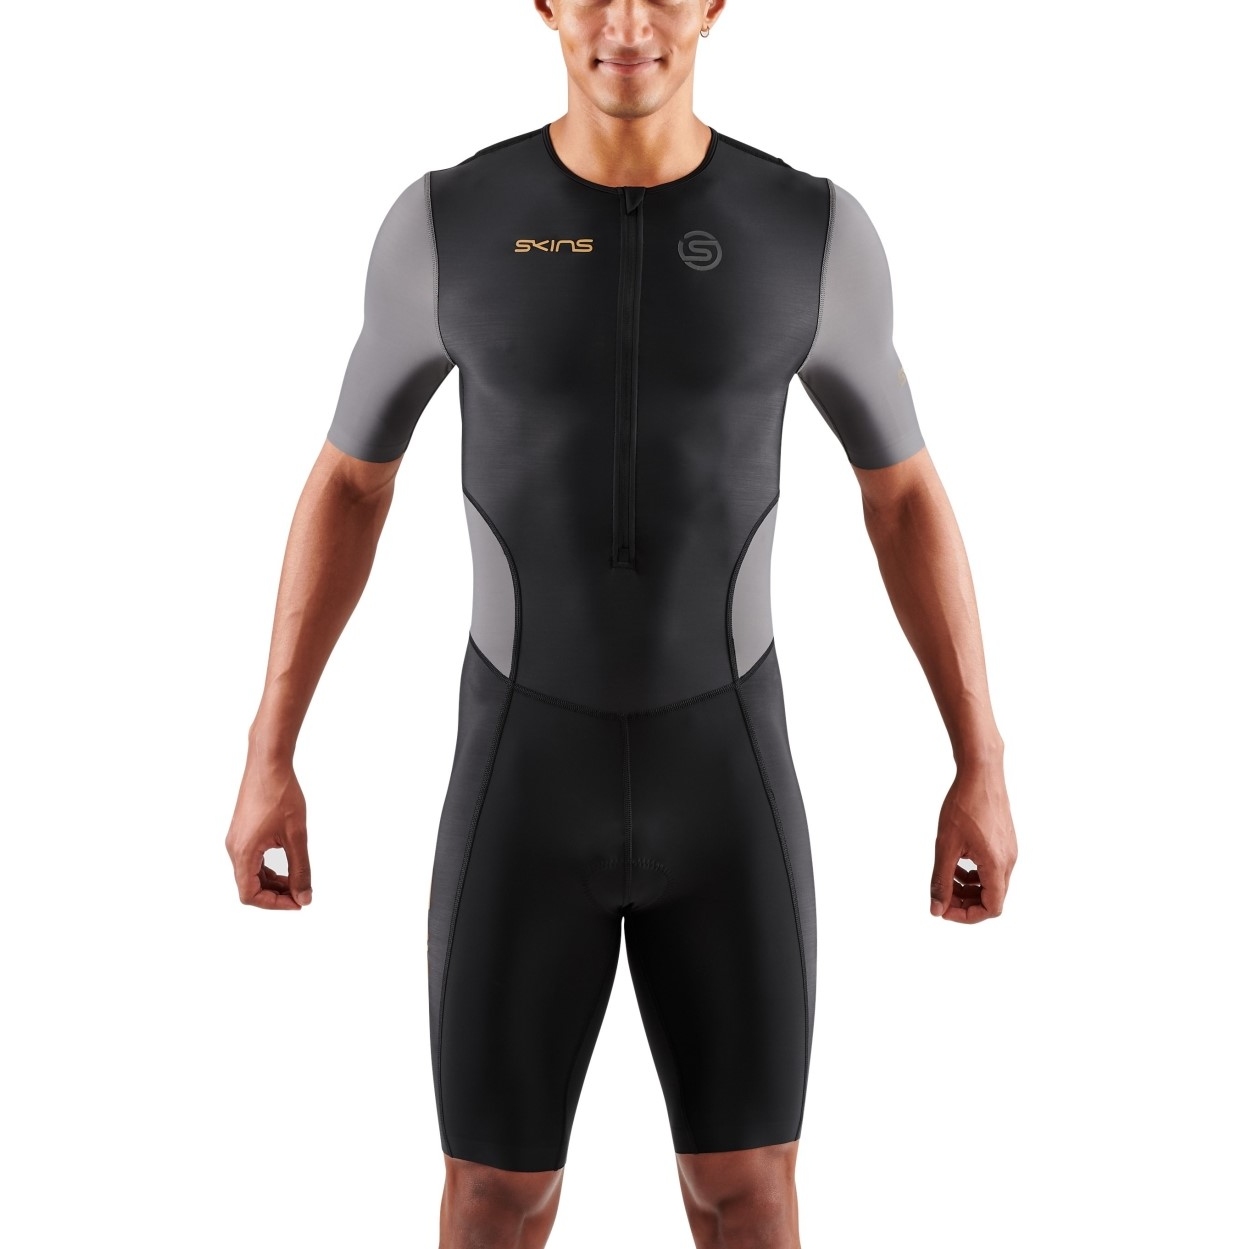 Produktbild von SKINS TRI Brand Kurzarm-Triathlonanzug Herren - Black/Carbon